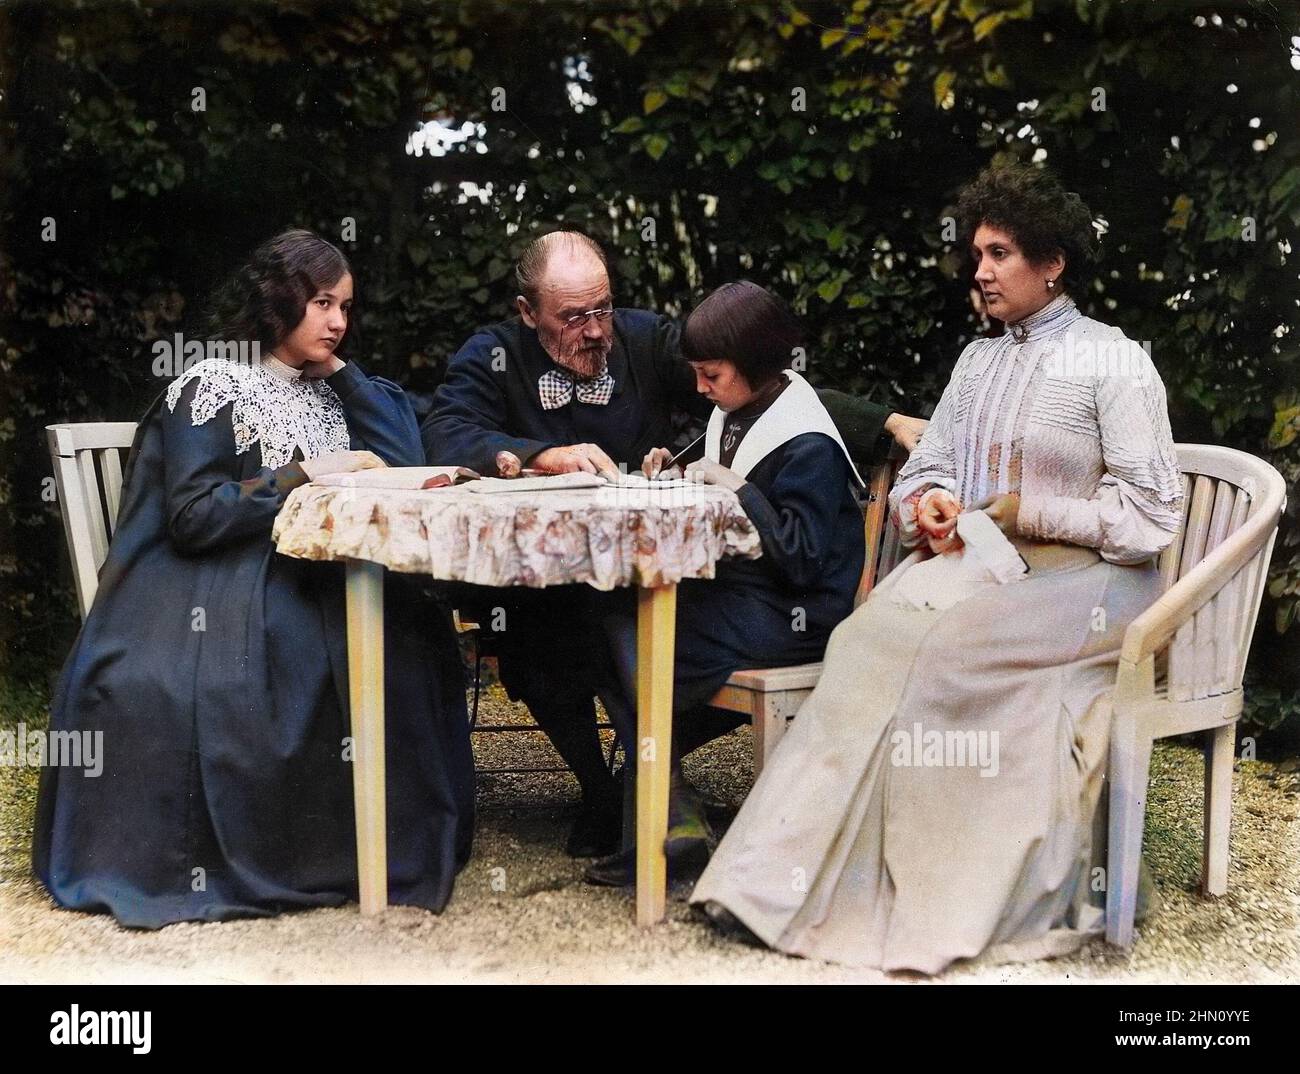 L'ecrivain Emile Zola et sa maitresse Jeanne Rozerot avec leurs enfants Jacques et Denise vers 1900 à Verneuil (Yvelines) Stockfoto